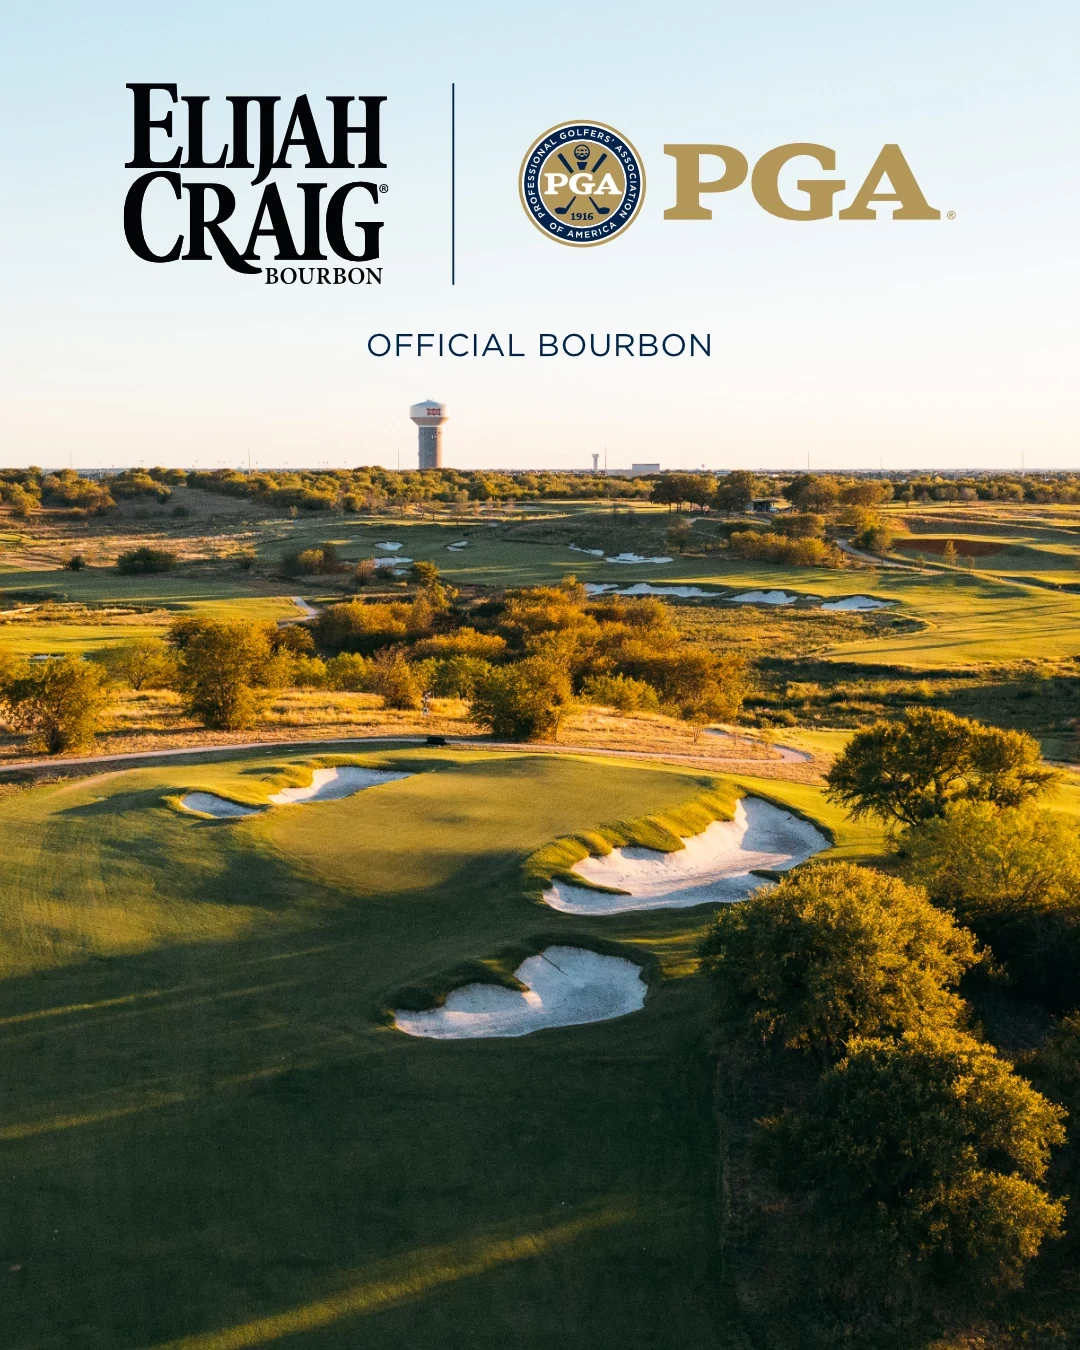 PGA of America Announces Elijah Craig As Their Official Bourbon